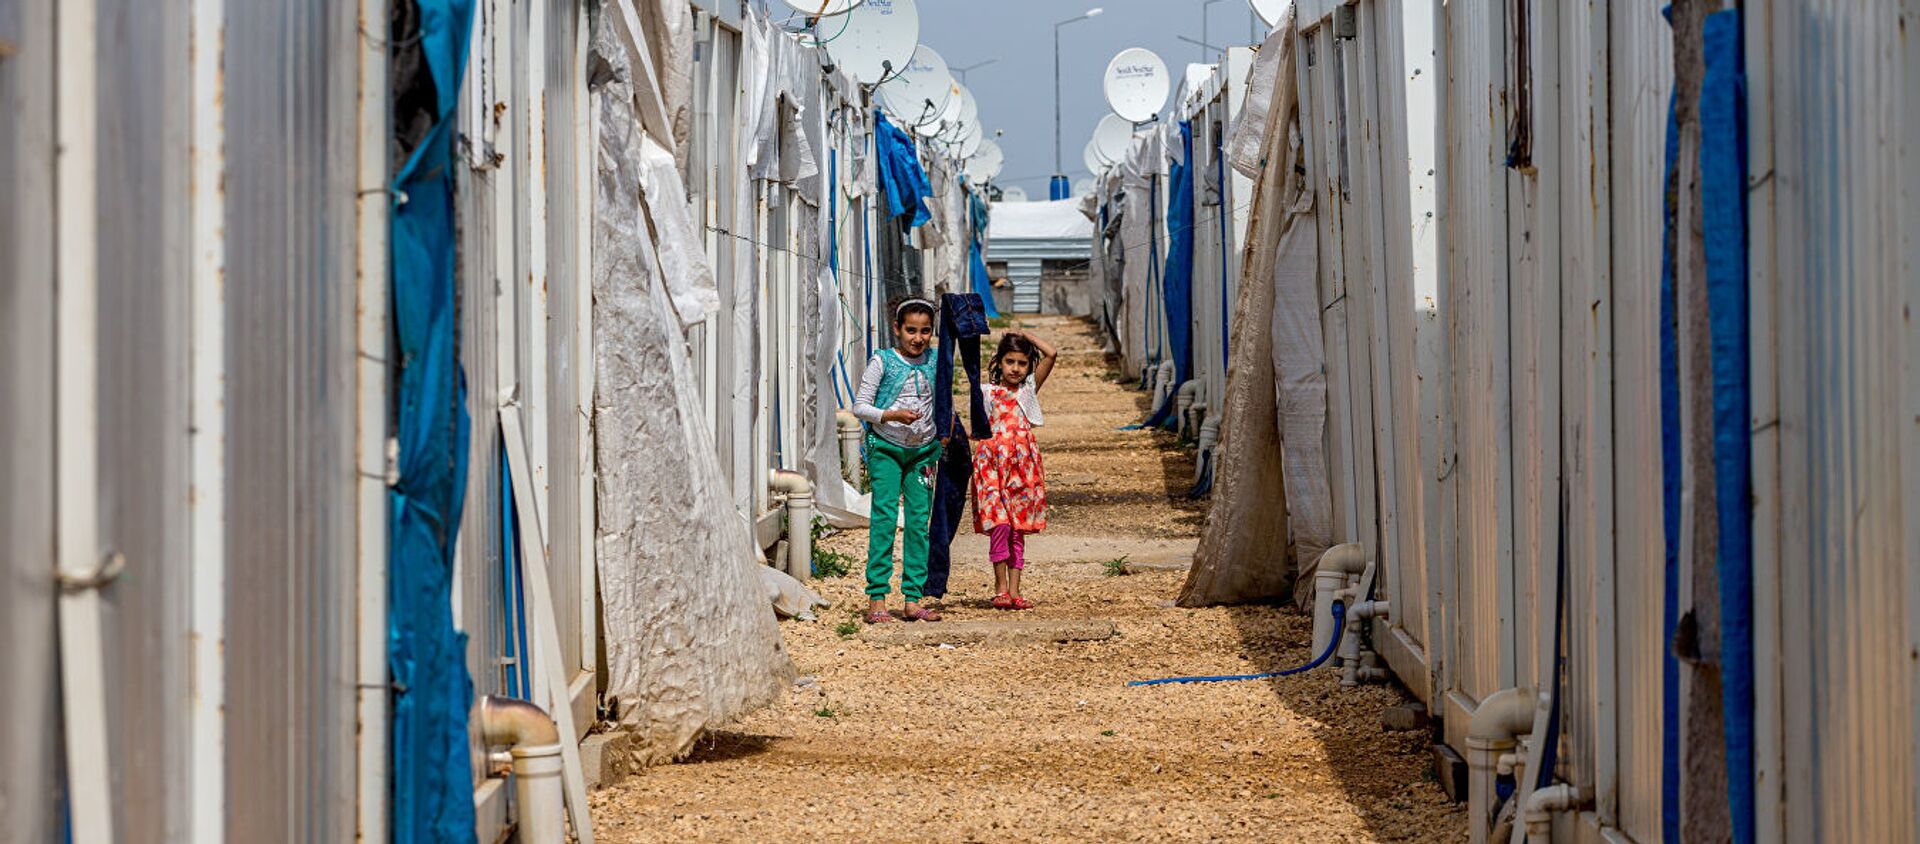 Лагерь для беженцев в Килисе, Турция. Архивное фото - Sputnik Абхазия, 1920, 28.01.2019